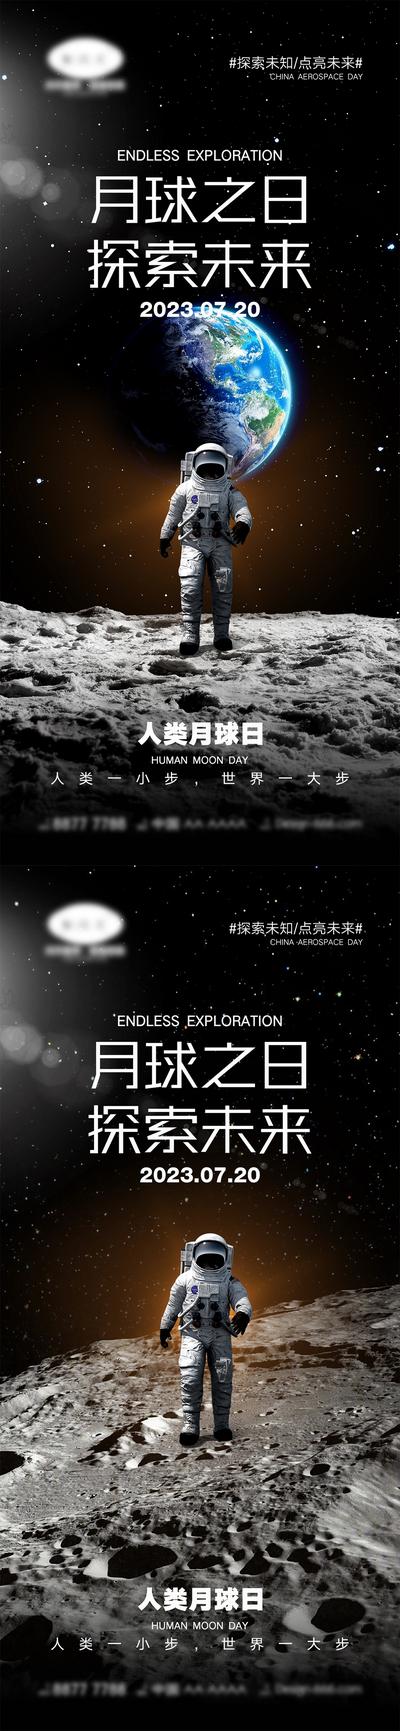 南门网 海报 公立节日 中国航天日 世界航天日 火箭 宇航员 宇宙 地球 太空 4.24 7.20 人类月球日 月球 探索